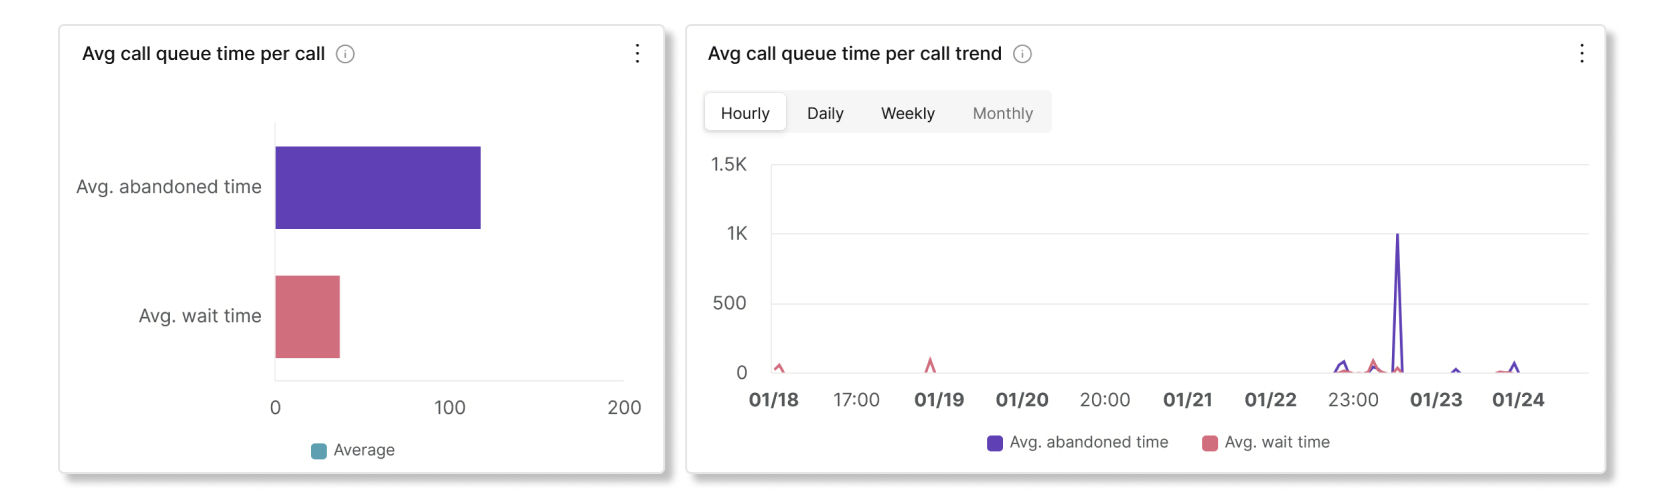 Média de filas de chamadas minutos por chamada e gráficos de tendência na filas de chamadas analítica de estatísticas